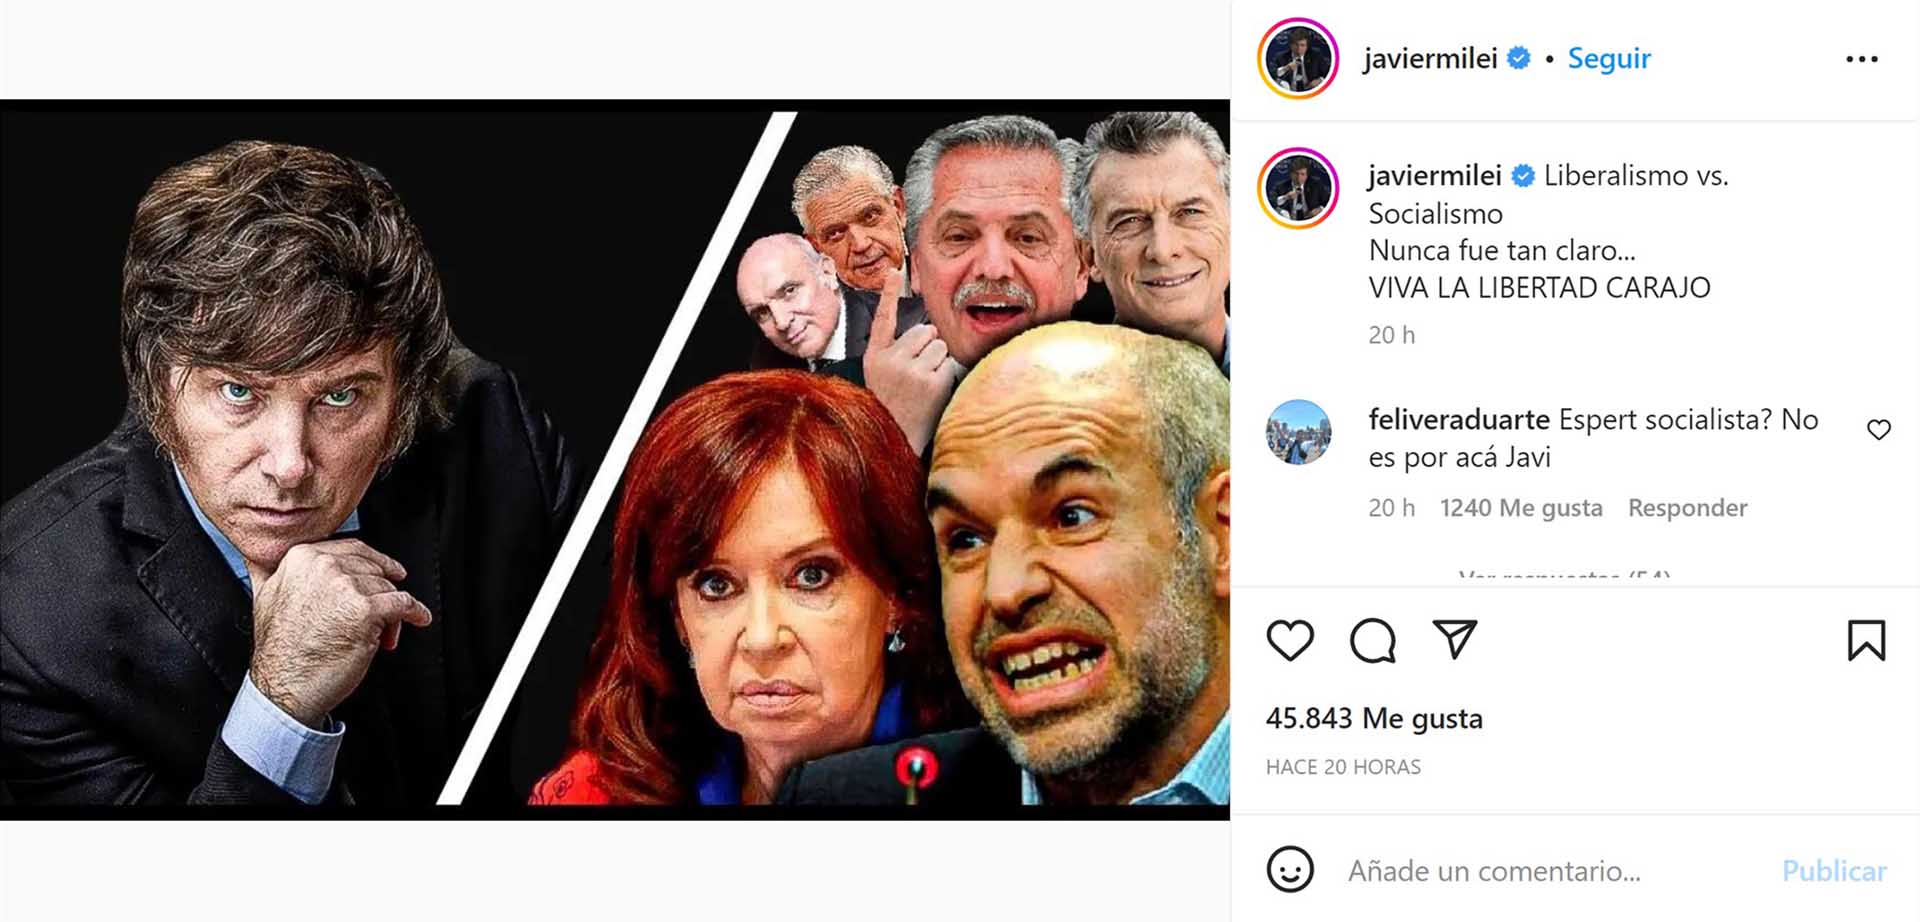 El posteo en Instagram del diputado nacional Javier Milei